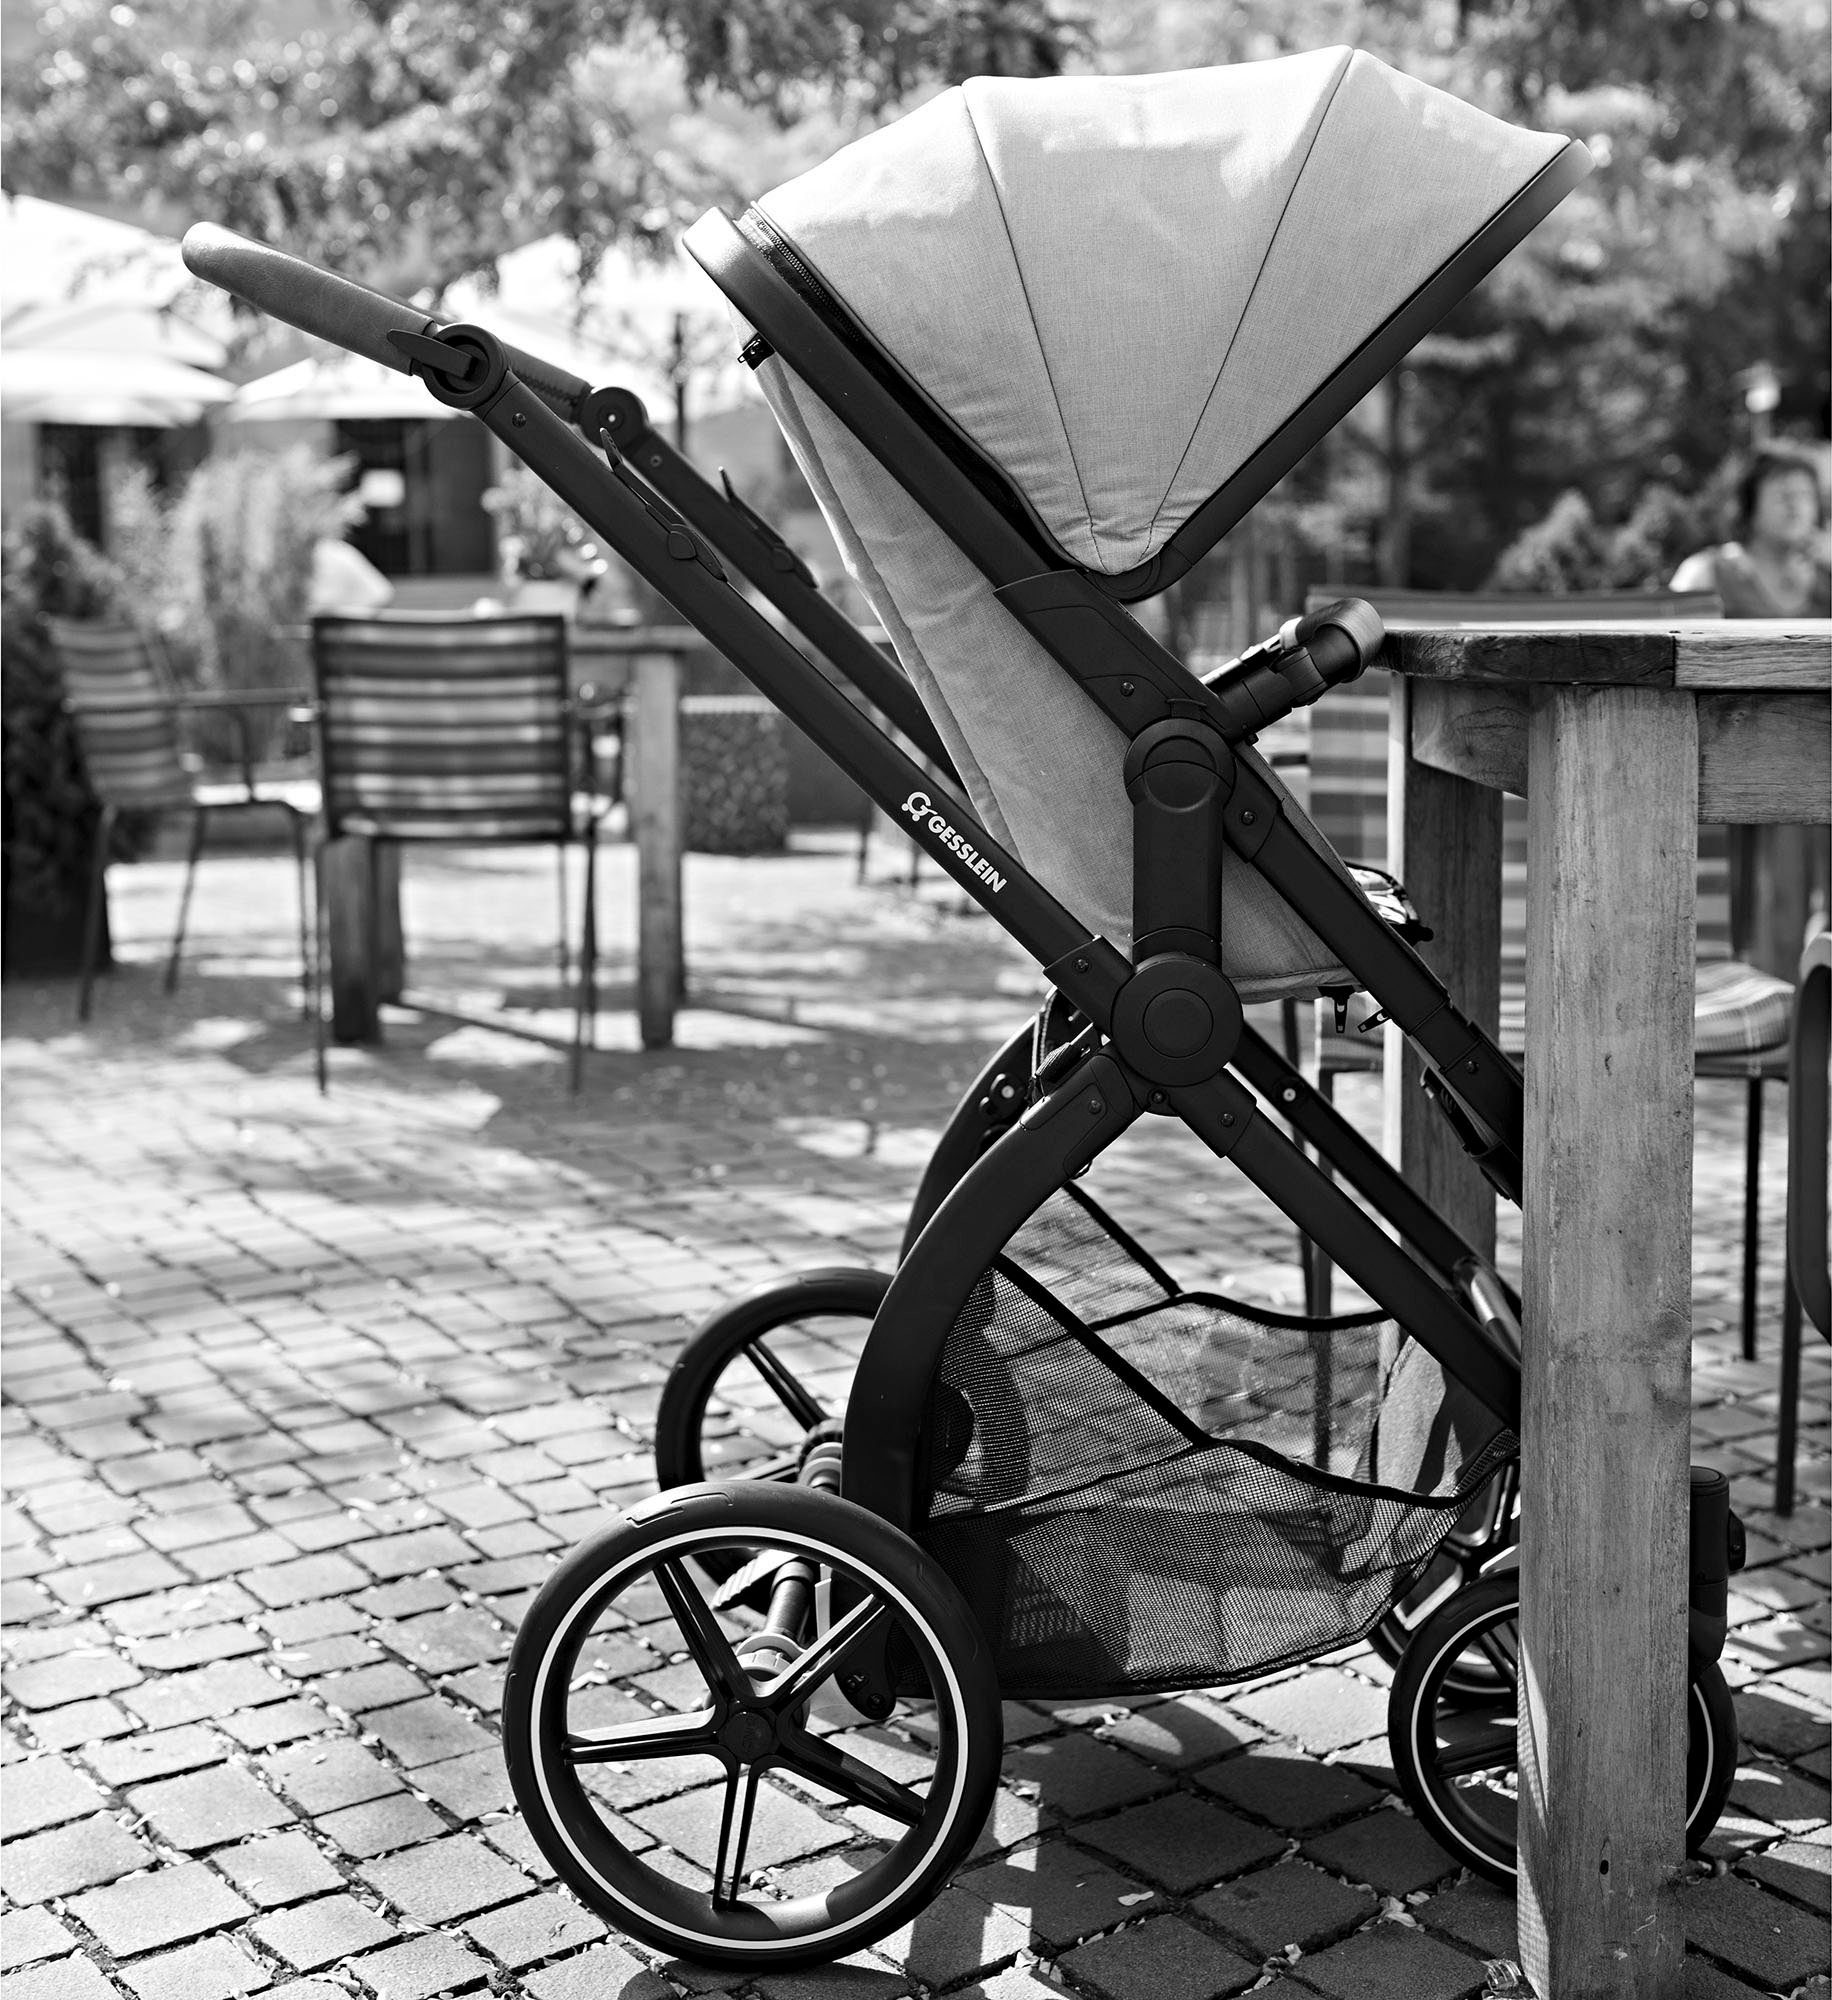 Babywanne und Soft+ Kombi-Kinderwagen Life, farn, FX4 schwarz/tabak, mit Babyschalenadapter C3 mit Aufsatz Gesslein